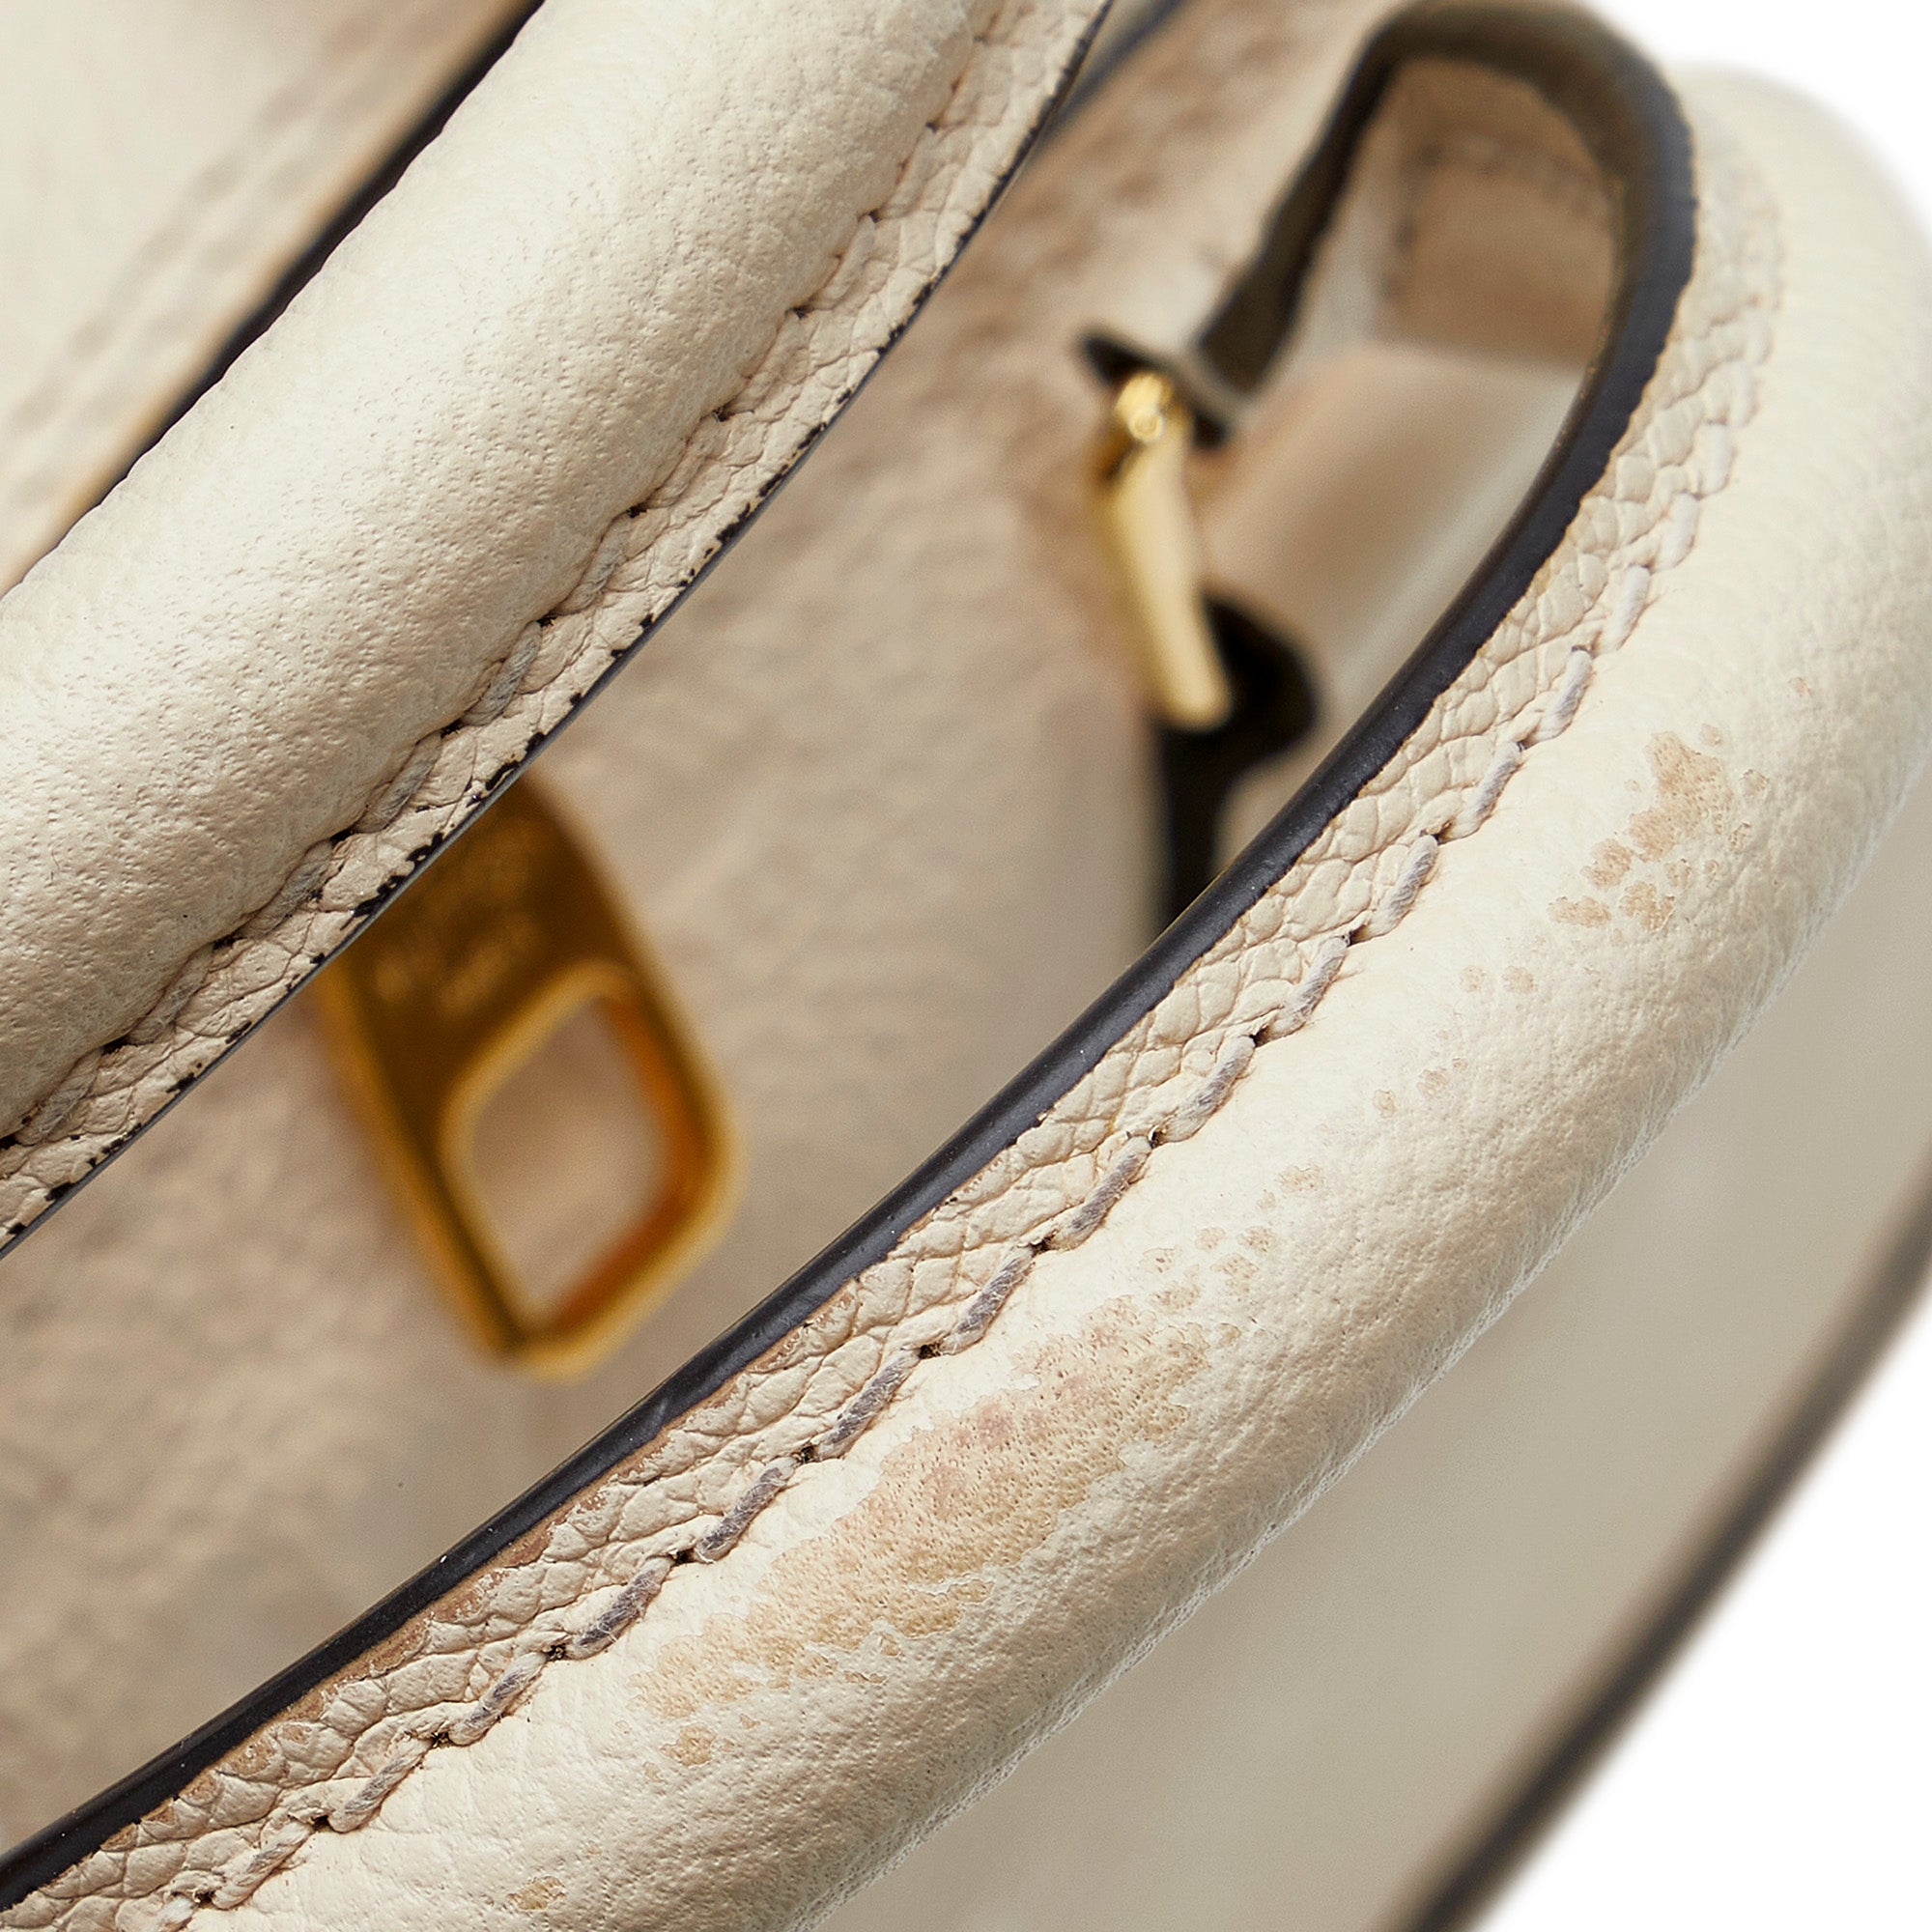 Louis Vuitton Neo Alma Handbag Monogram Empreinte Leather PM at